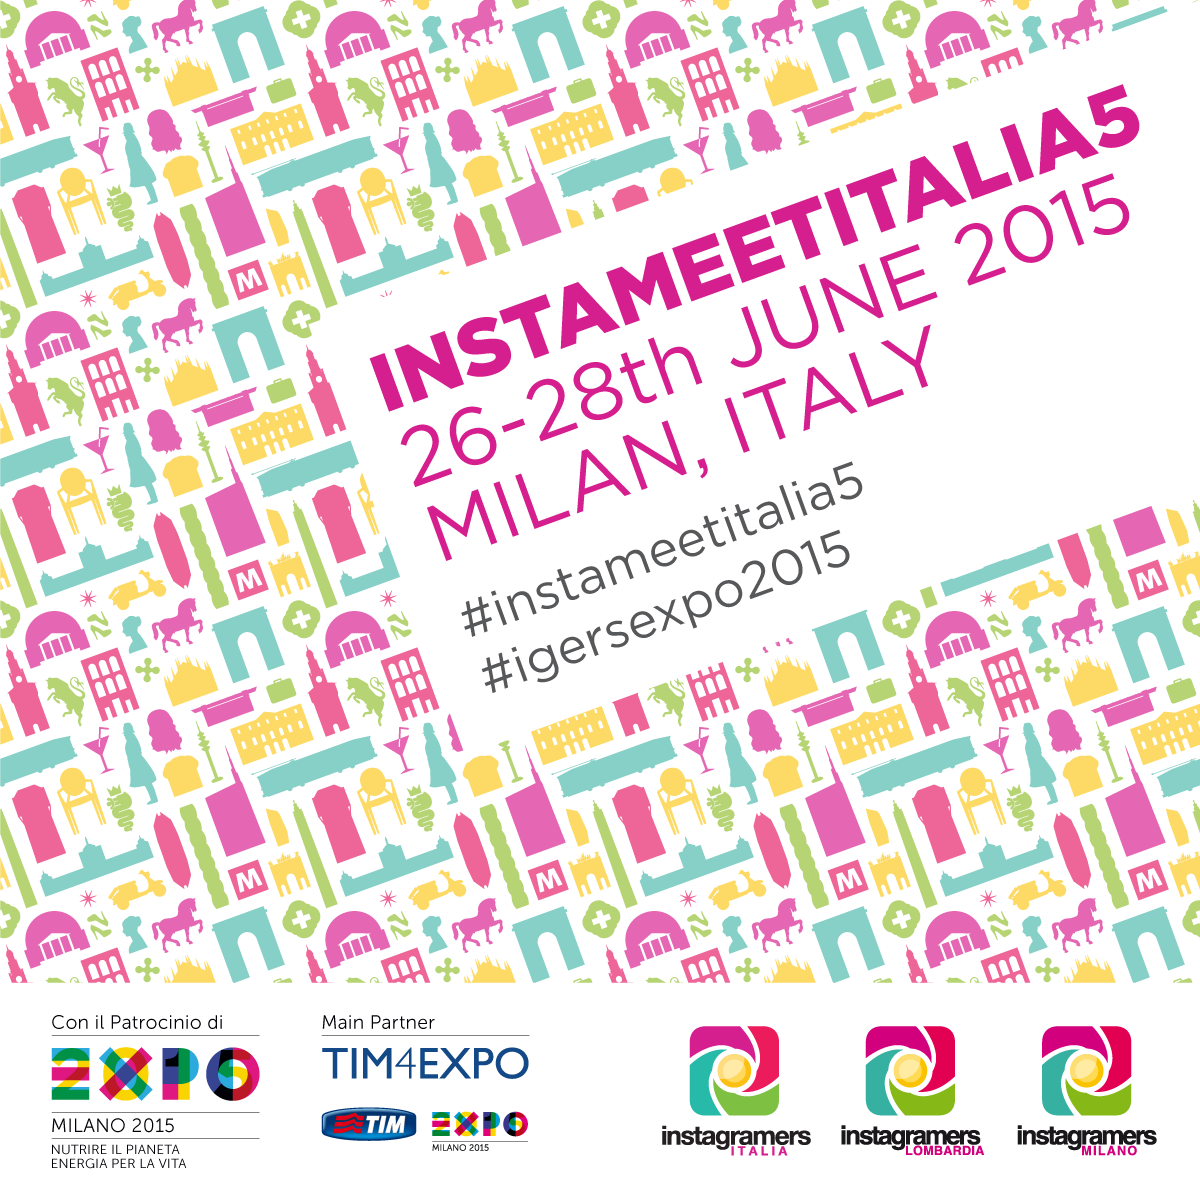 Instameet Italia 5: in arrivo da tutto il mondo per documentare Milano e l’Expo